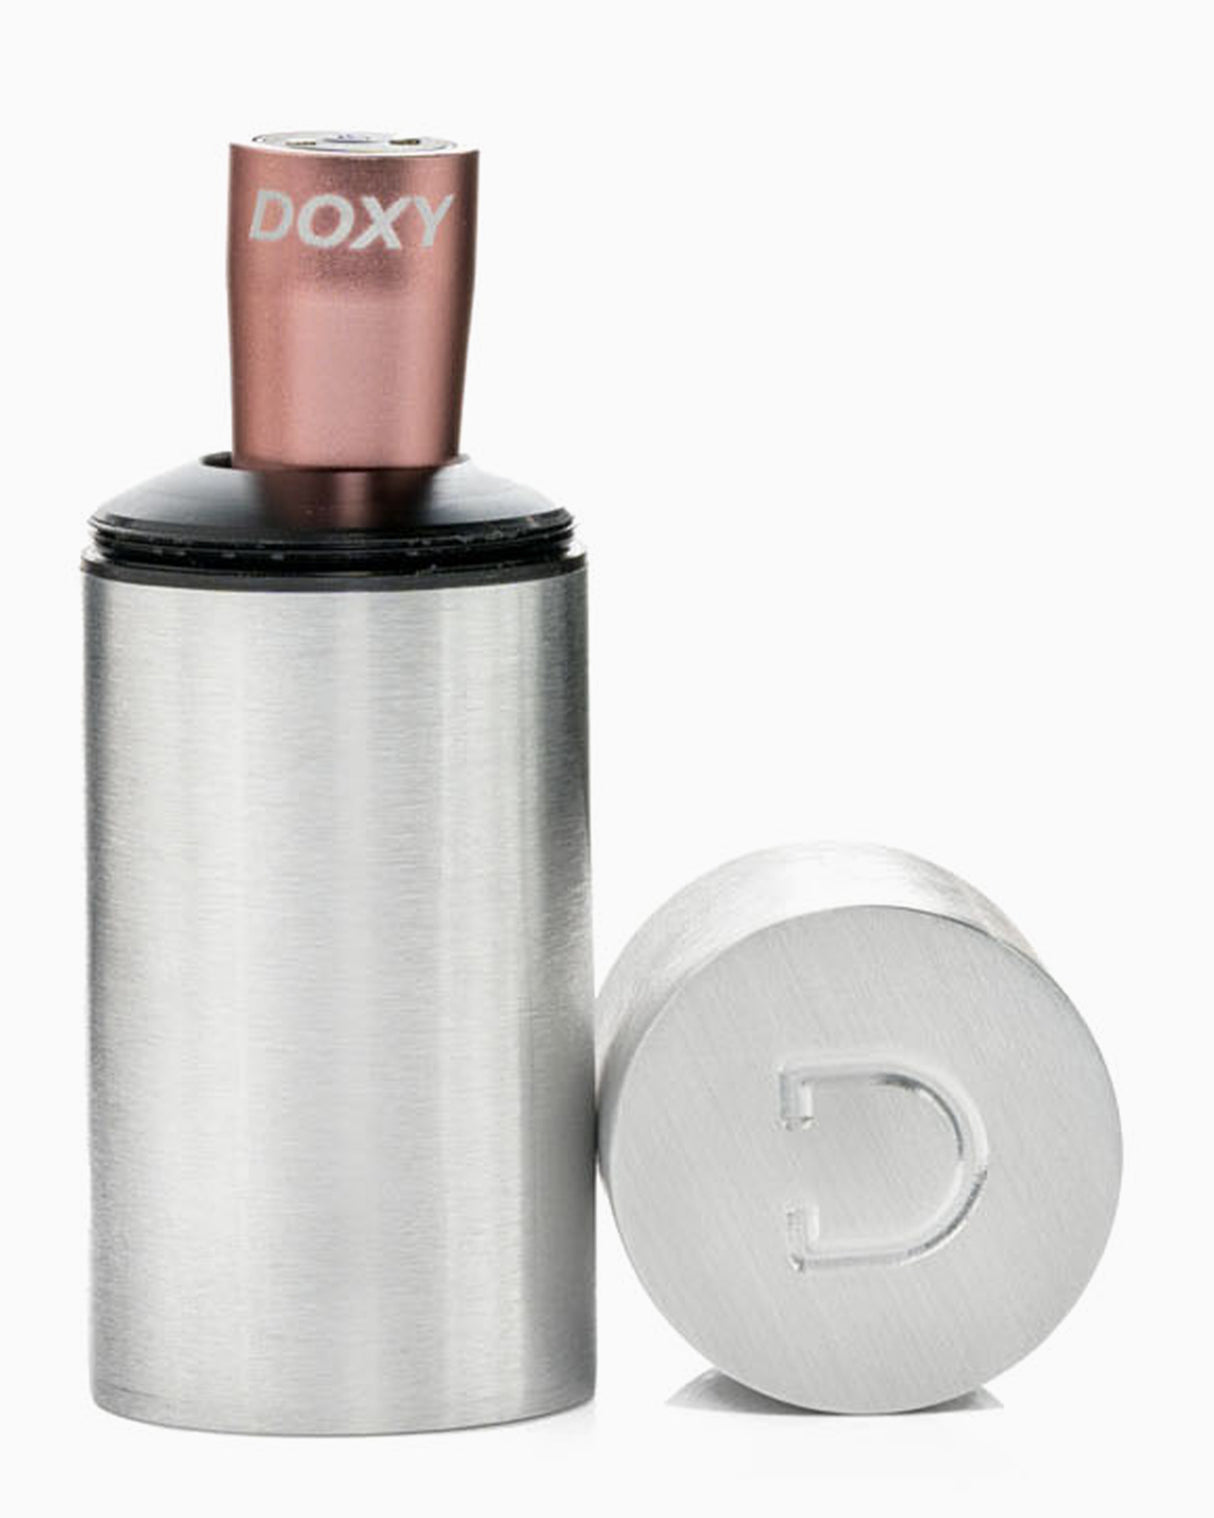 Doxy Bullet Vibrator